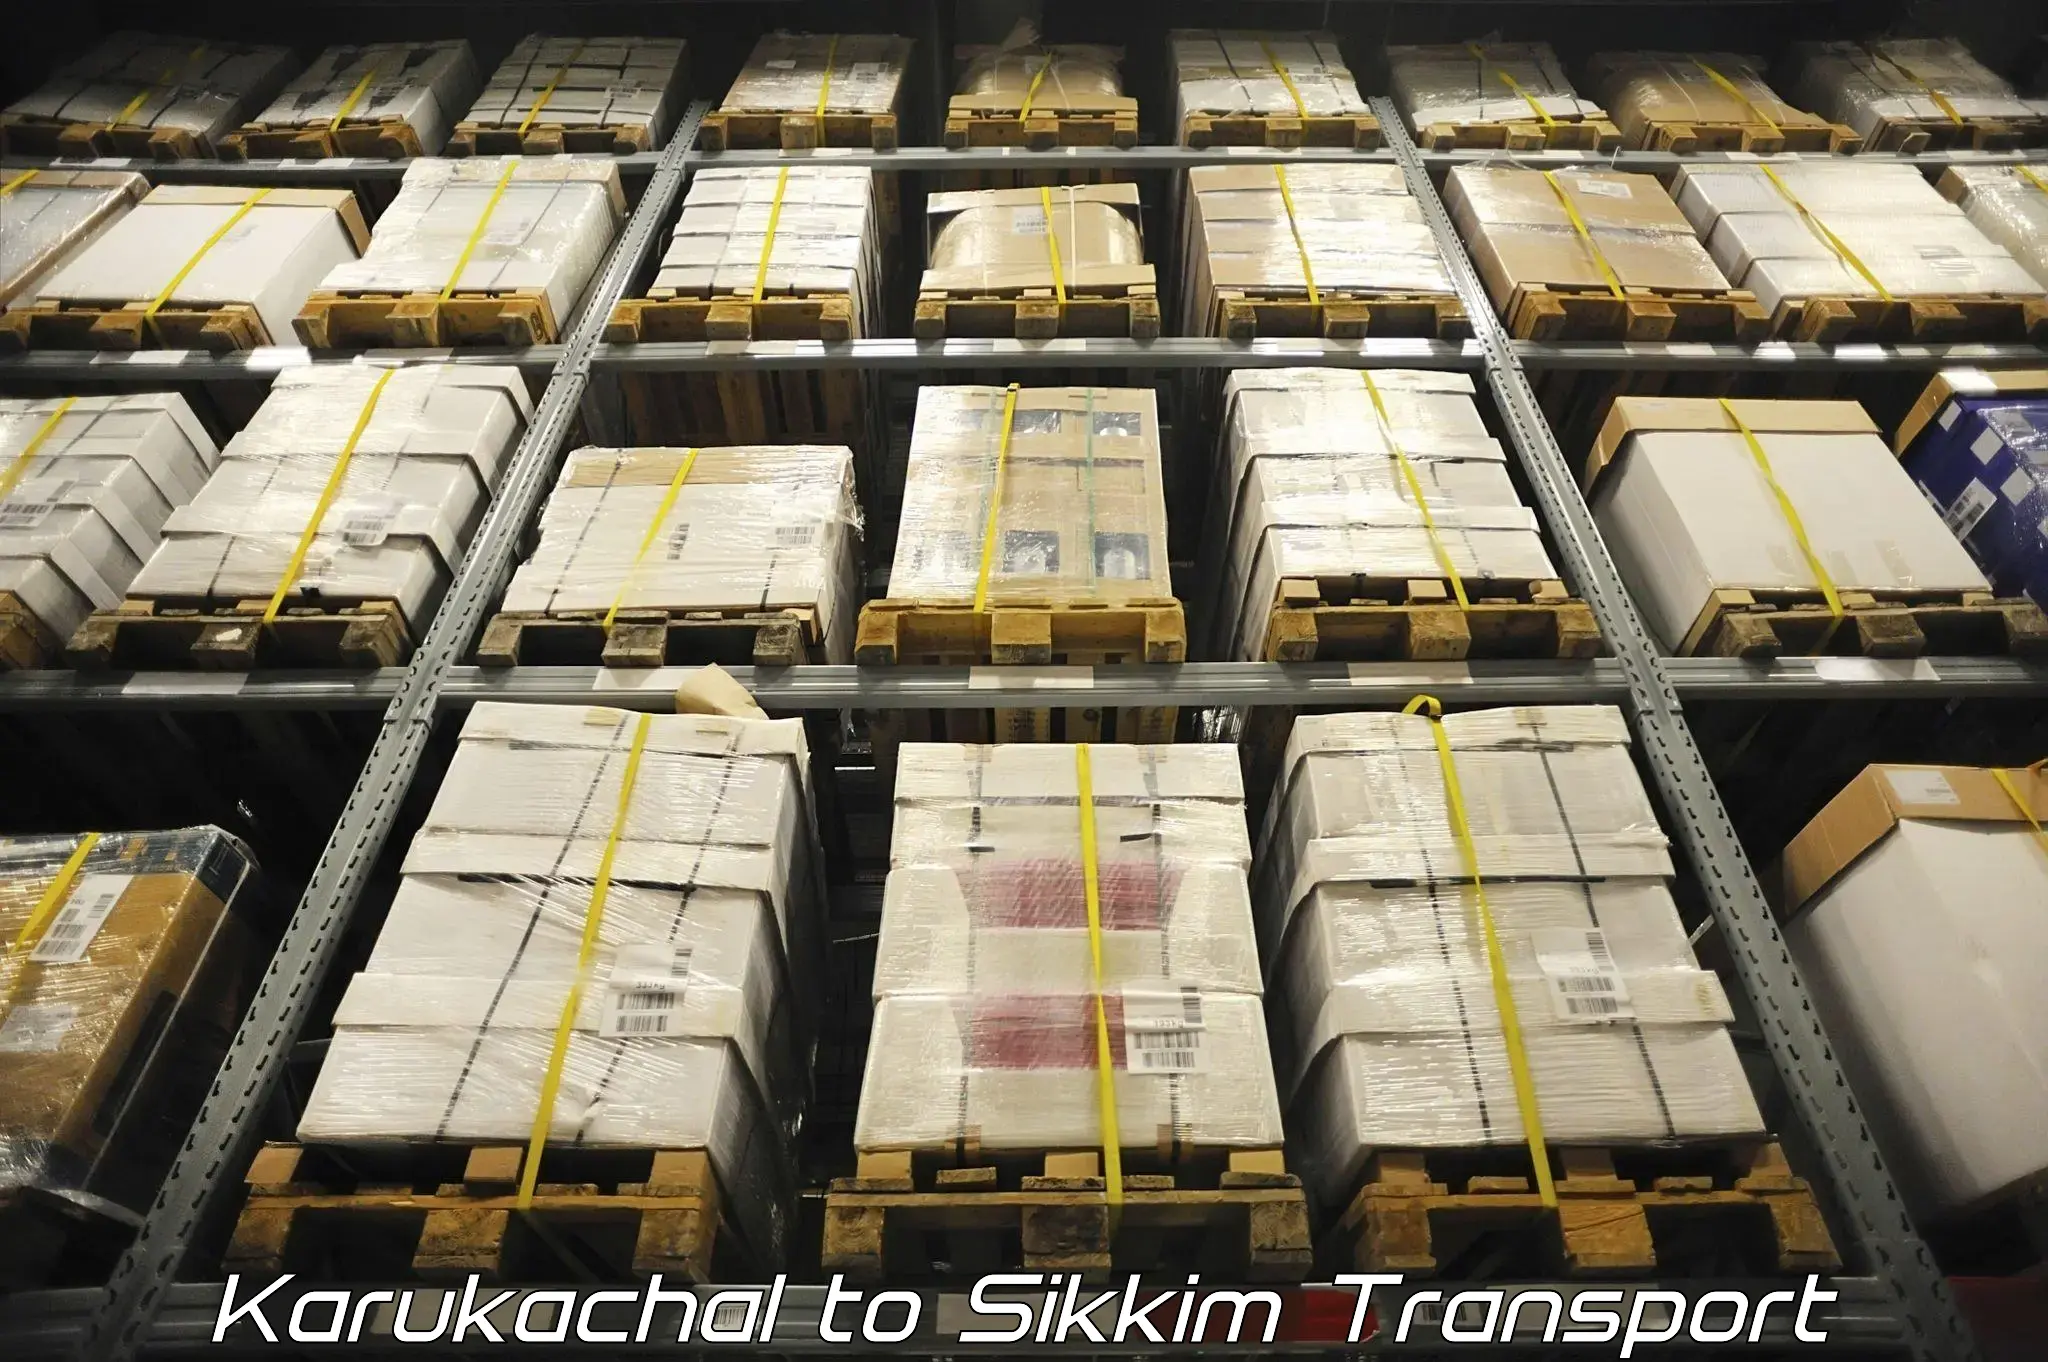 Nearest transport service Karukachal to Singtam